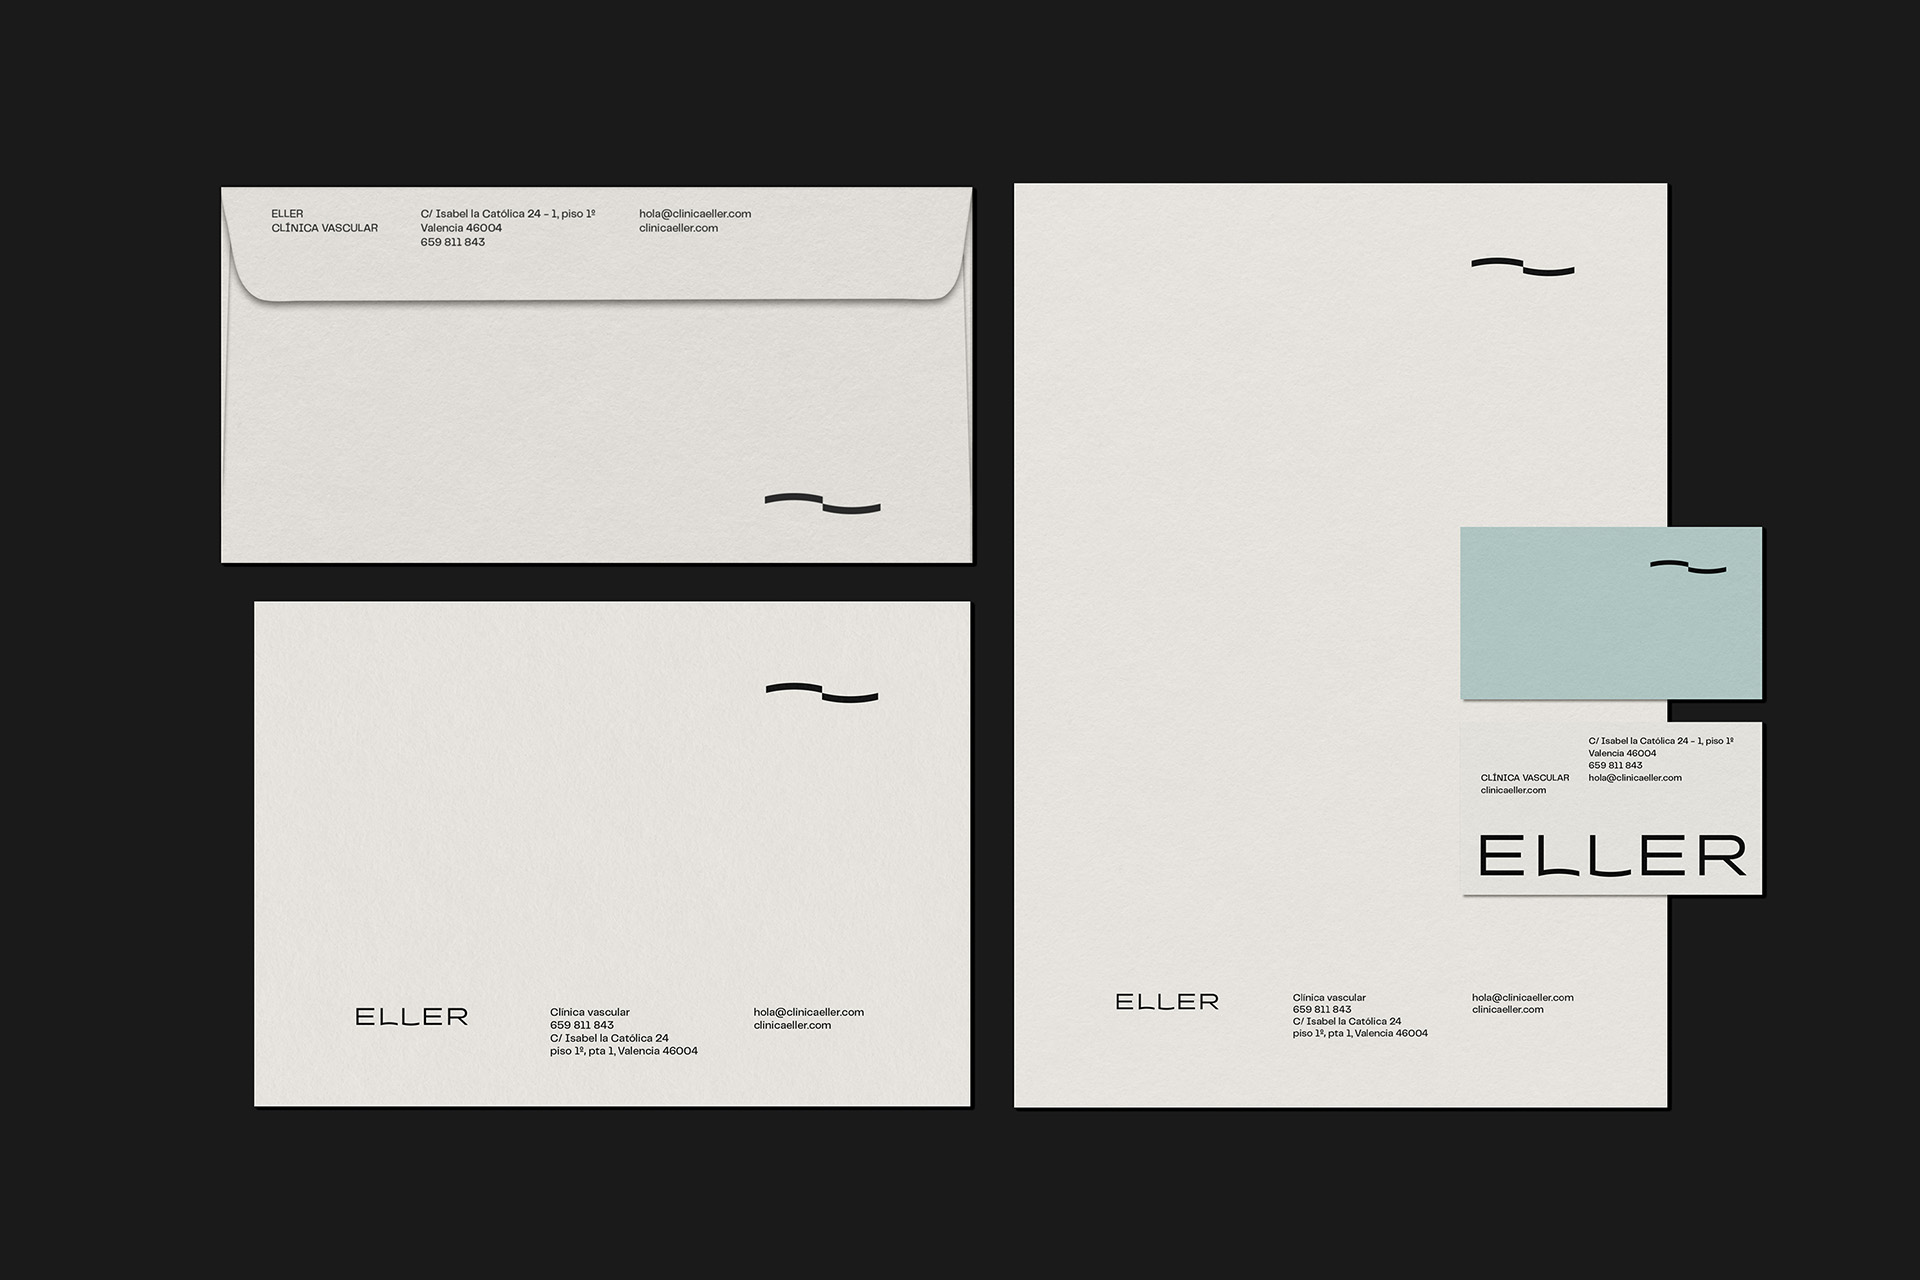 Diseño branding y logotipo de clinica estetica - Eller